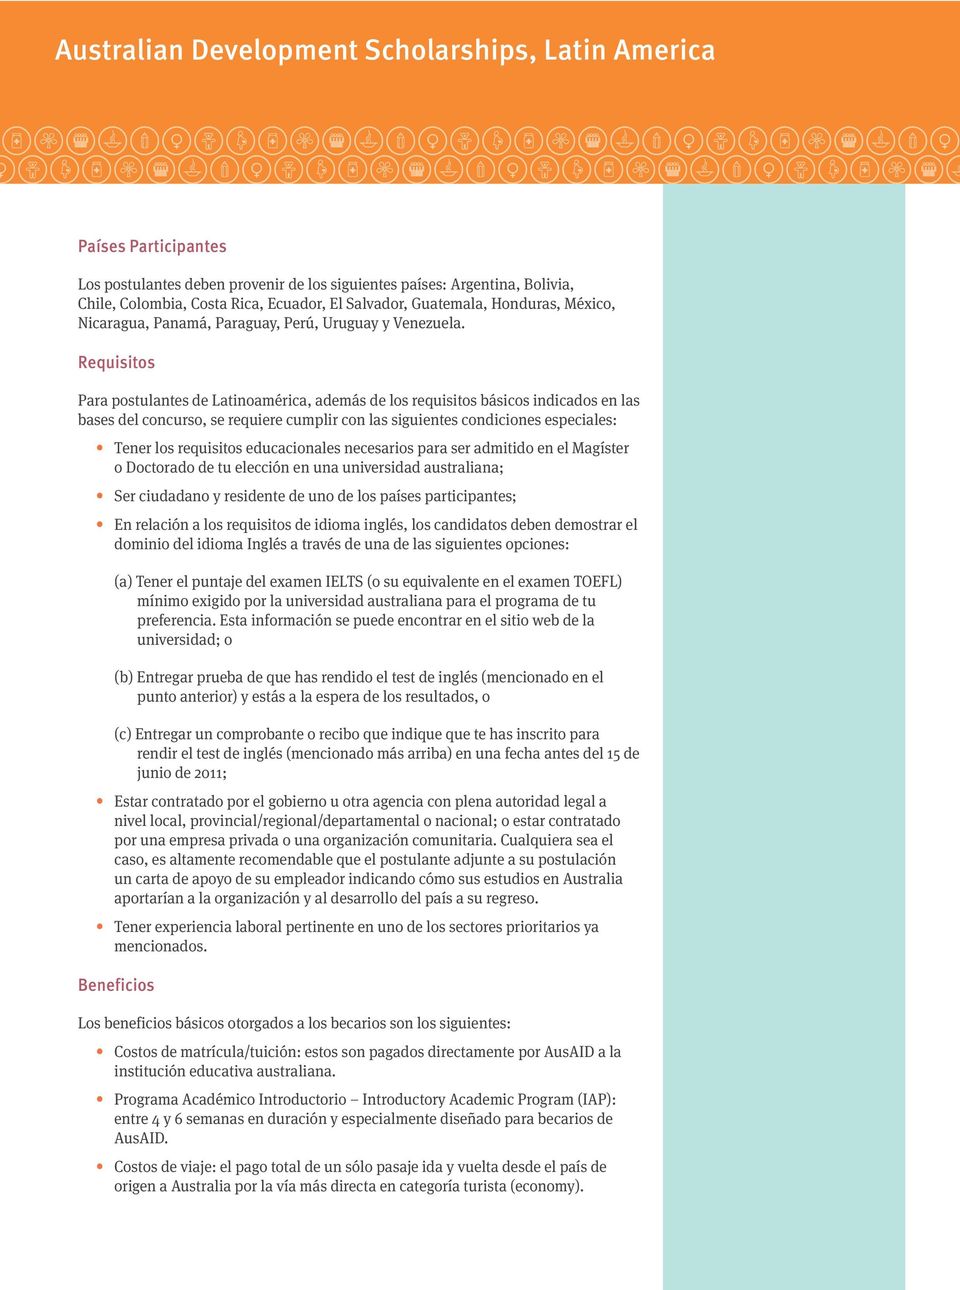 Requisitos Para postulantes de Latinoamérica, además de los requisitos básicos indicados en las bases del concurso, se requiere cumplir con las siguientes condiciones especiales: Tener los requisitos